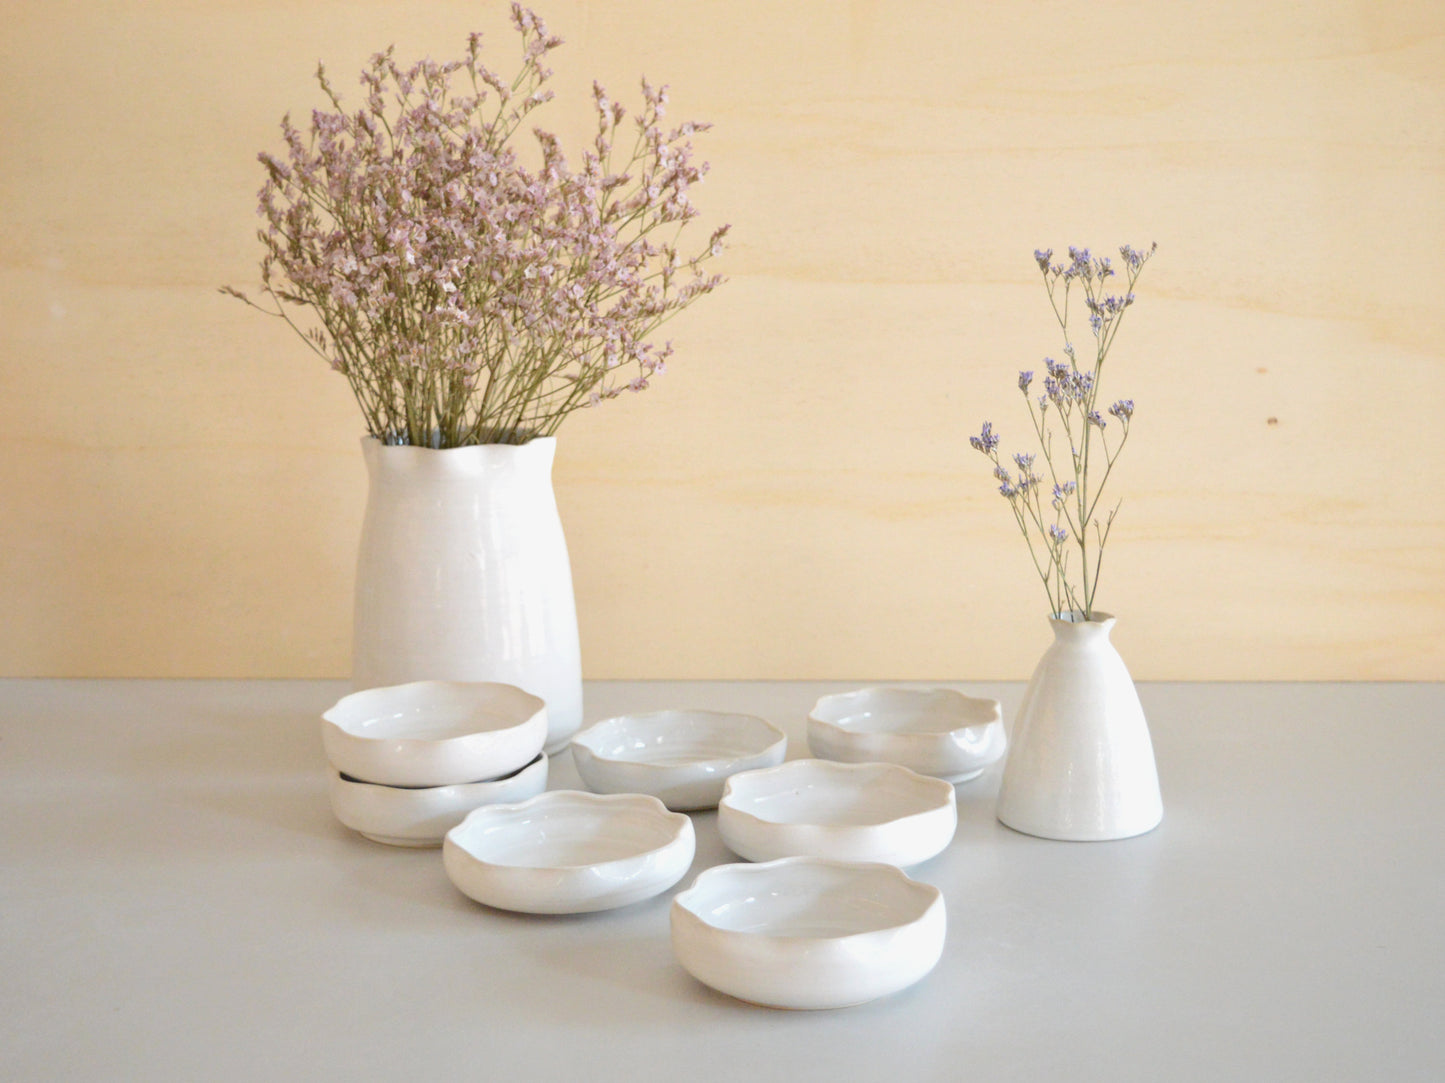 FIORE Ceramic Decorative small Plate Handmade in Italy